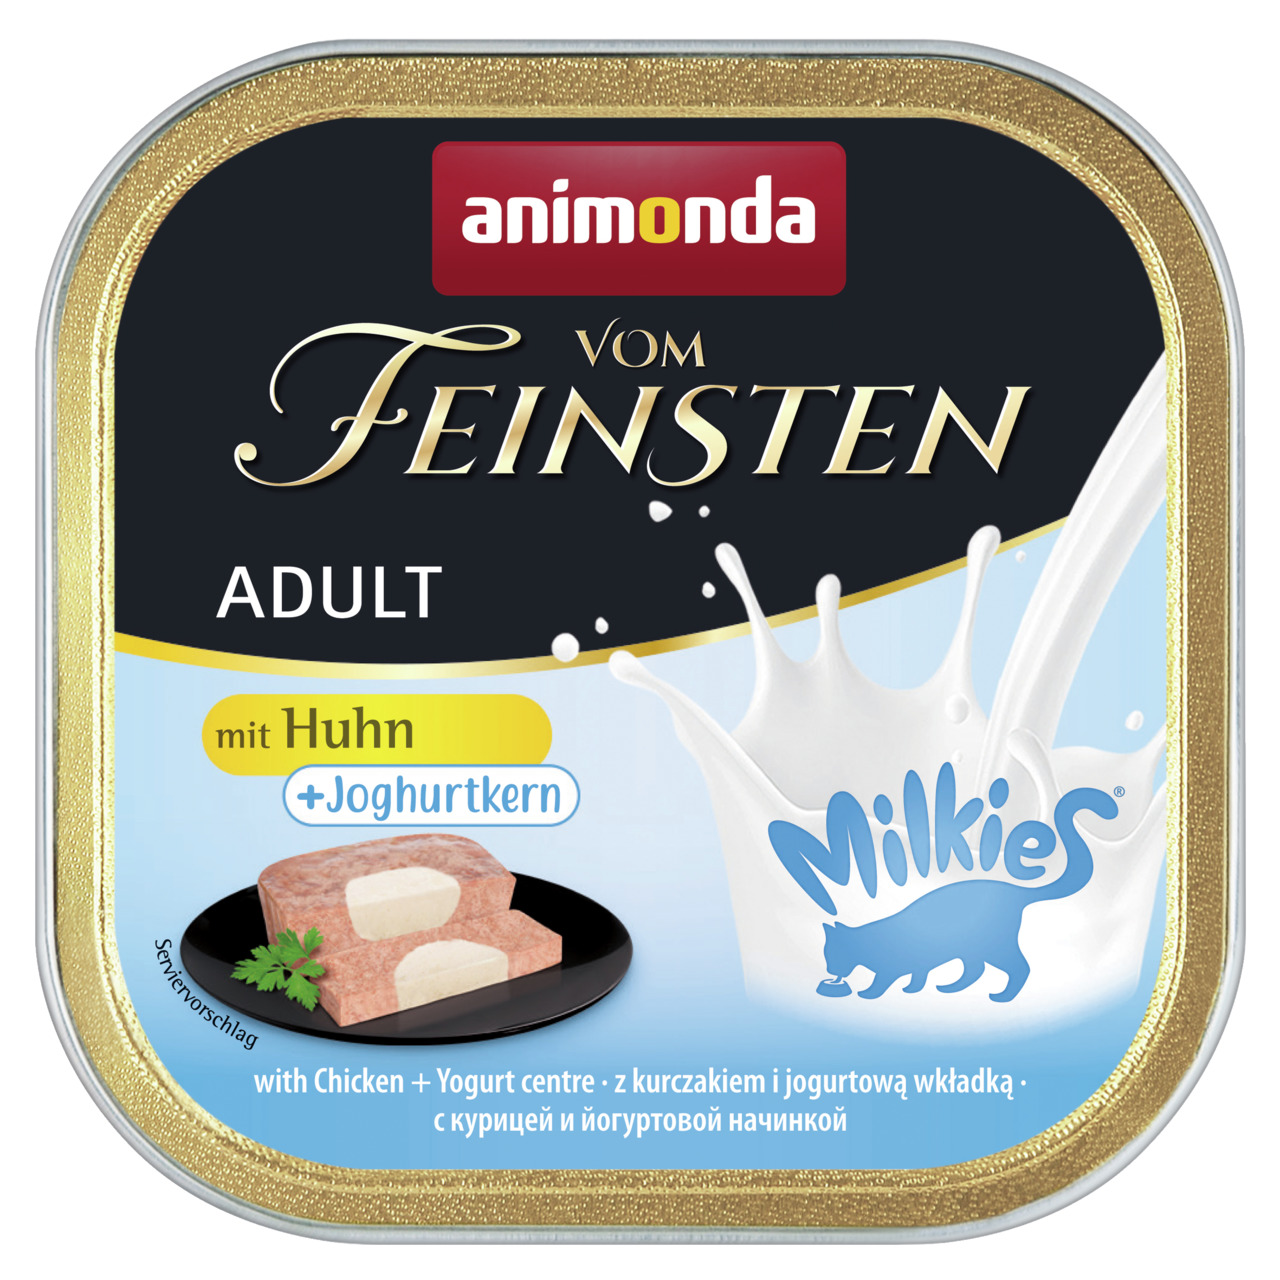 Sparpaket 8 x 100 g Animonda Vom Feinsten Adult mit Huhn + Joghurtkern Milkies Katzen Nassfutter